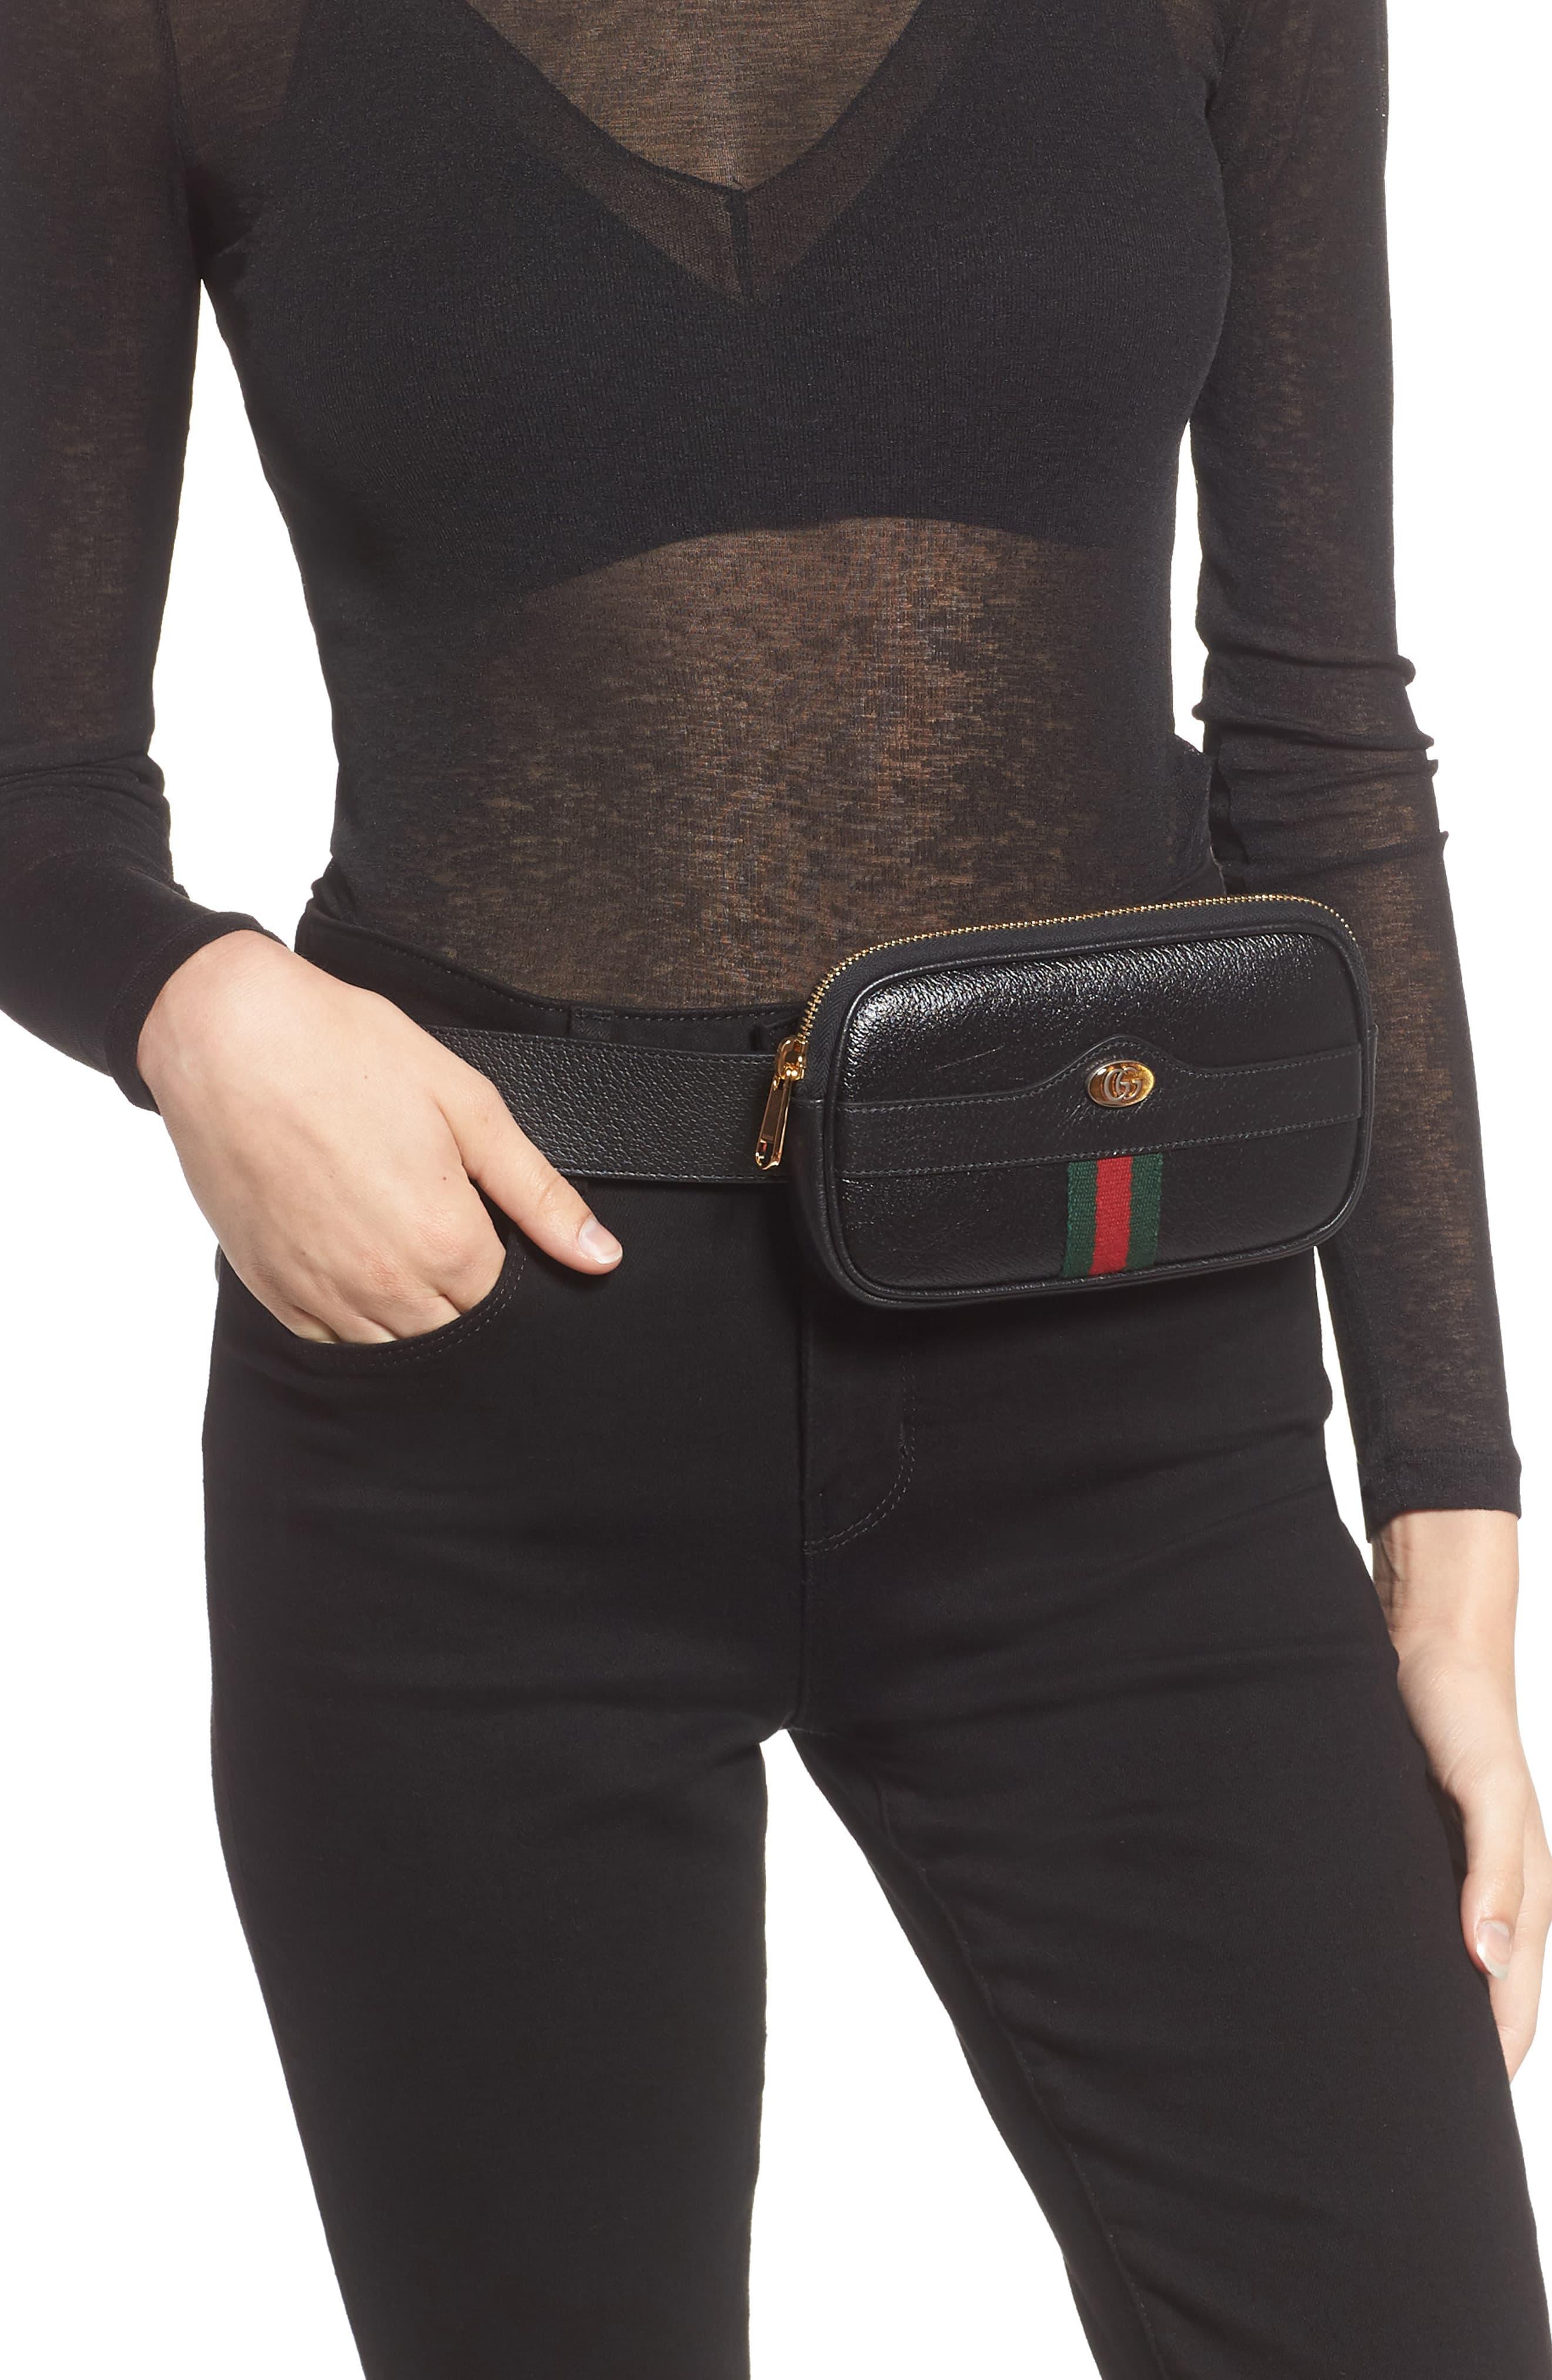 Gucci Iphone Belt Bag in Natural - Lyst